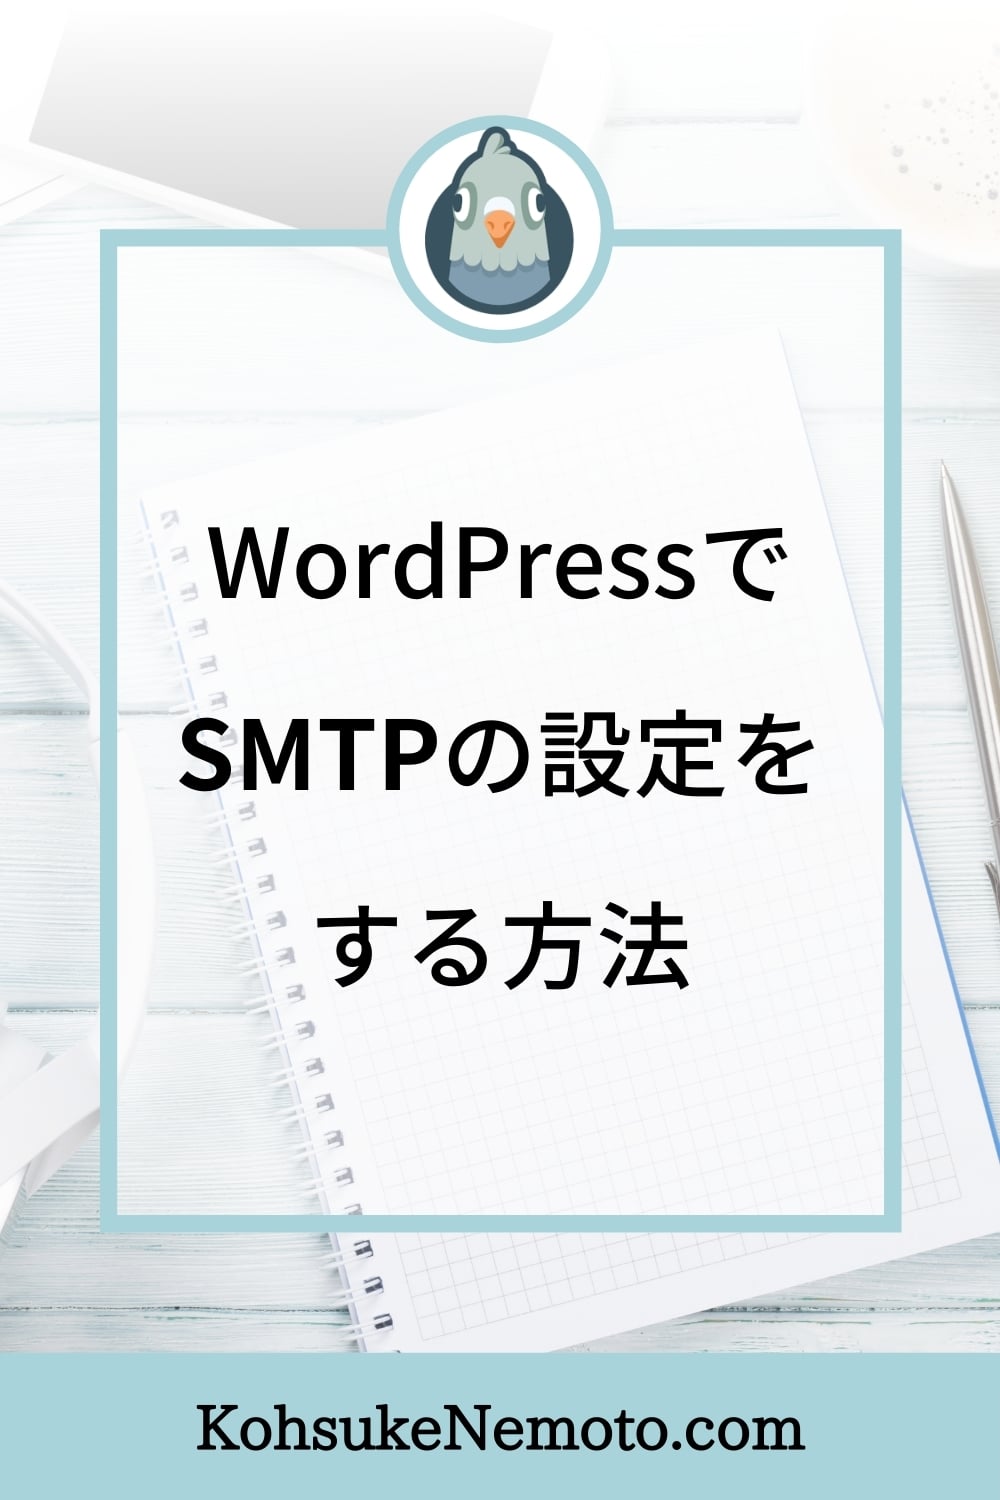 WP Mail SMTPの使い方：WordPressでSMTPの設定をする方法